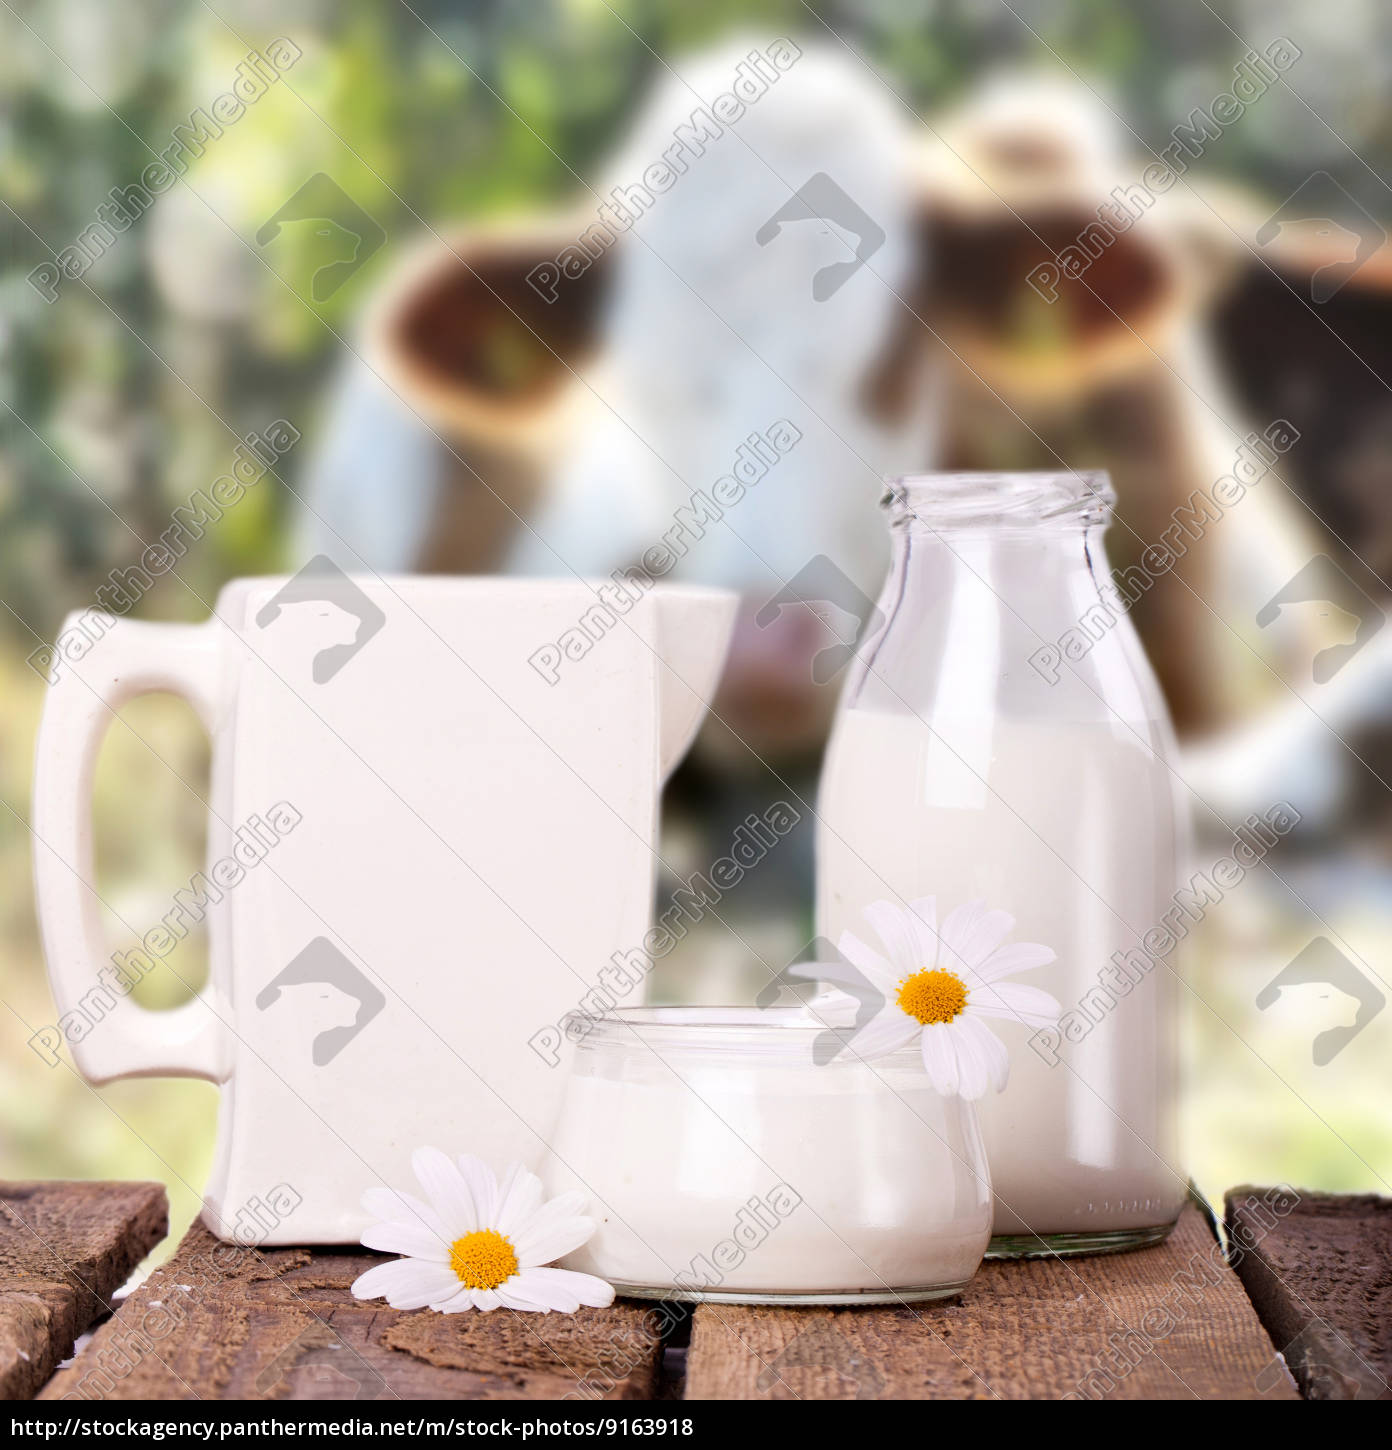 Milch mit Kühen im Hintergrund - Stock Photo - #9163918 | Bildagentur ...